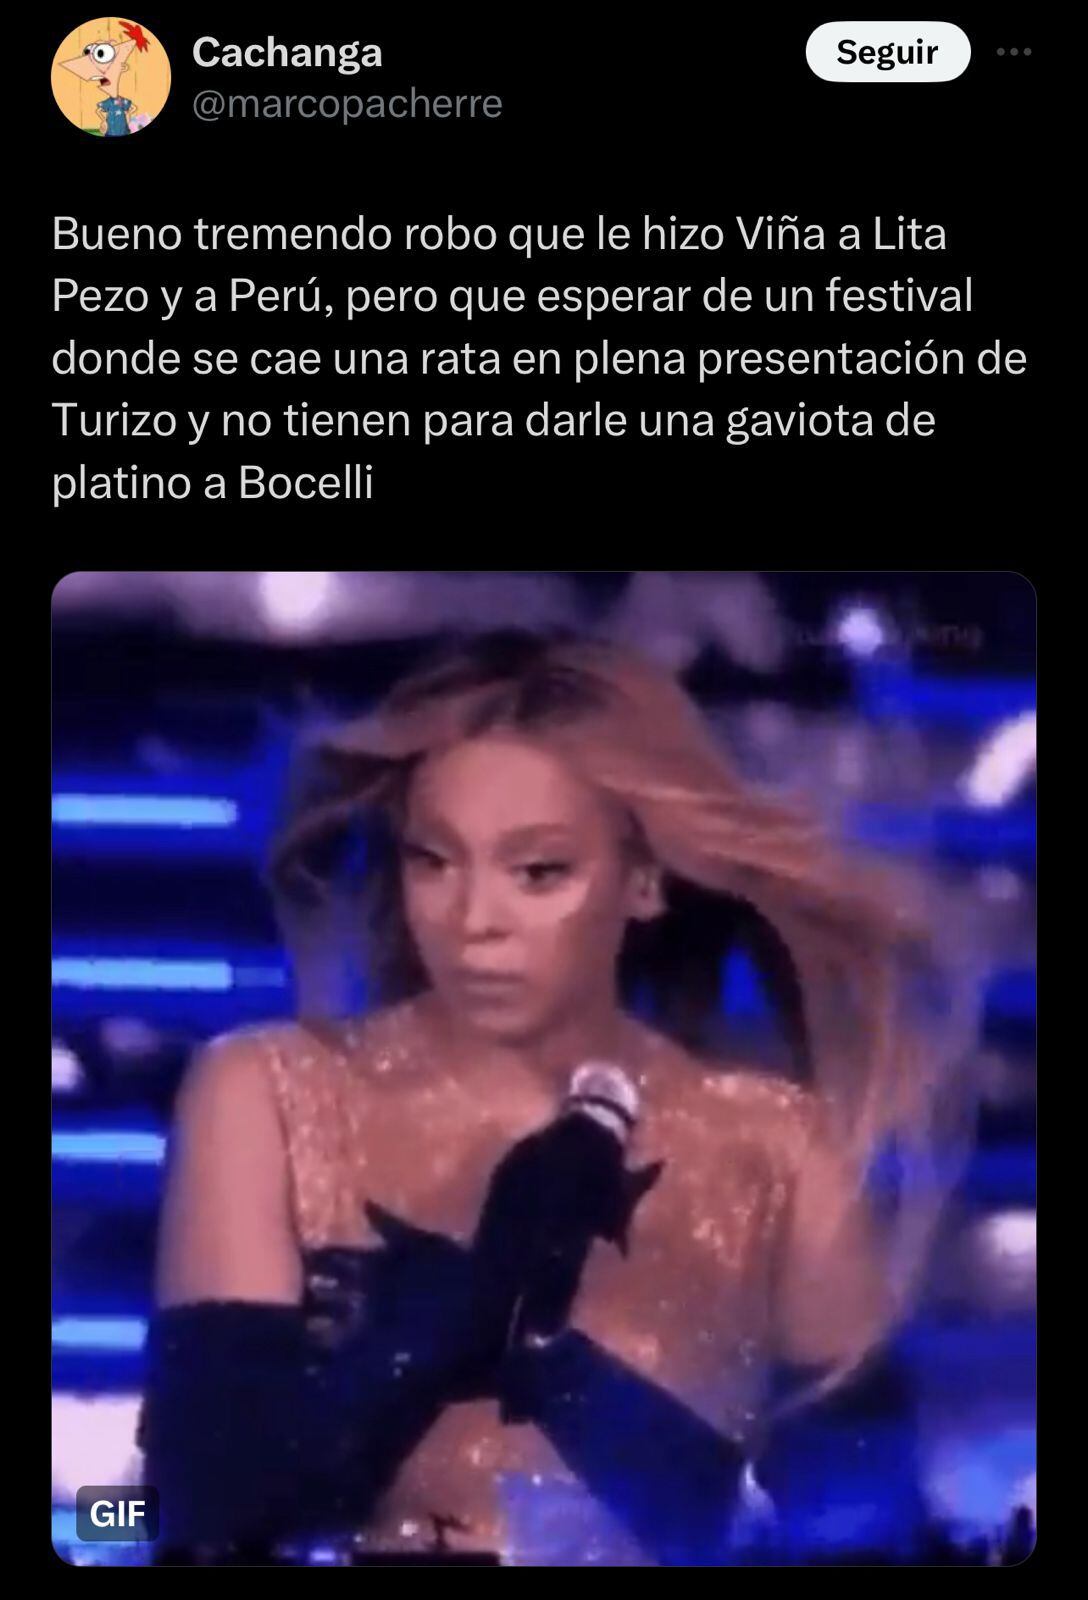 ⁠Lita Pezo no ganó Viña del Mar 2024 y los memes de furia y desilusión estallaron en redes sociales.